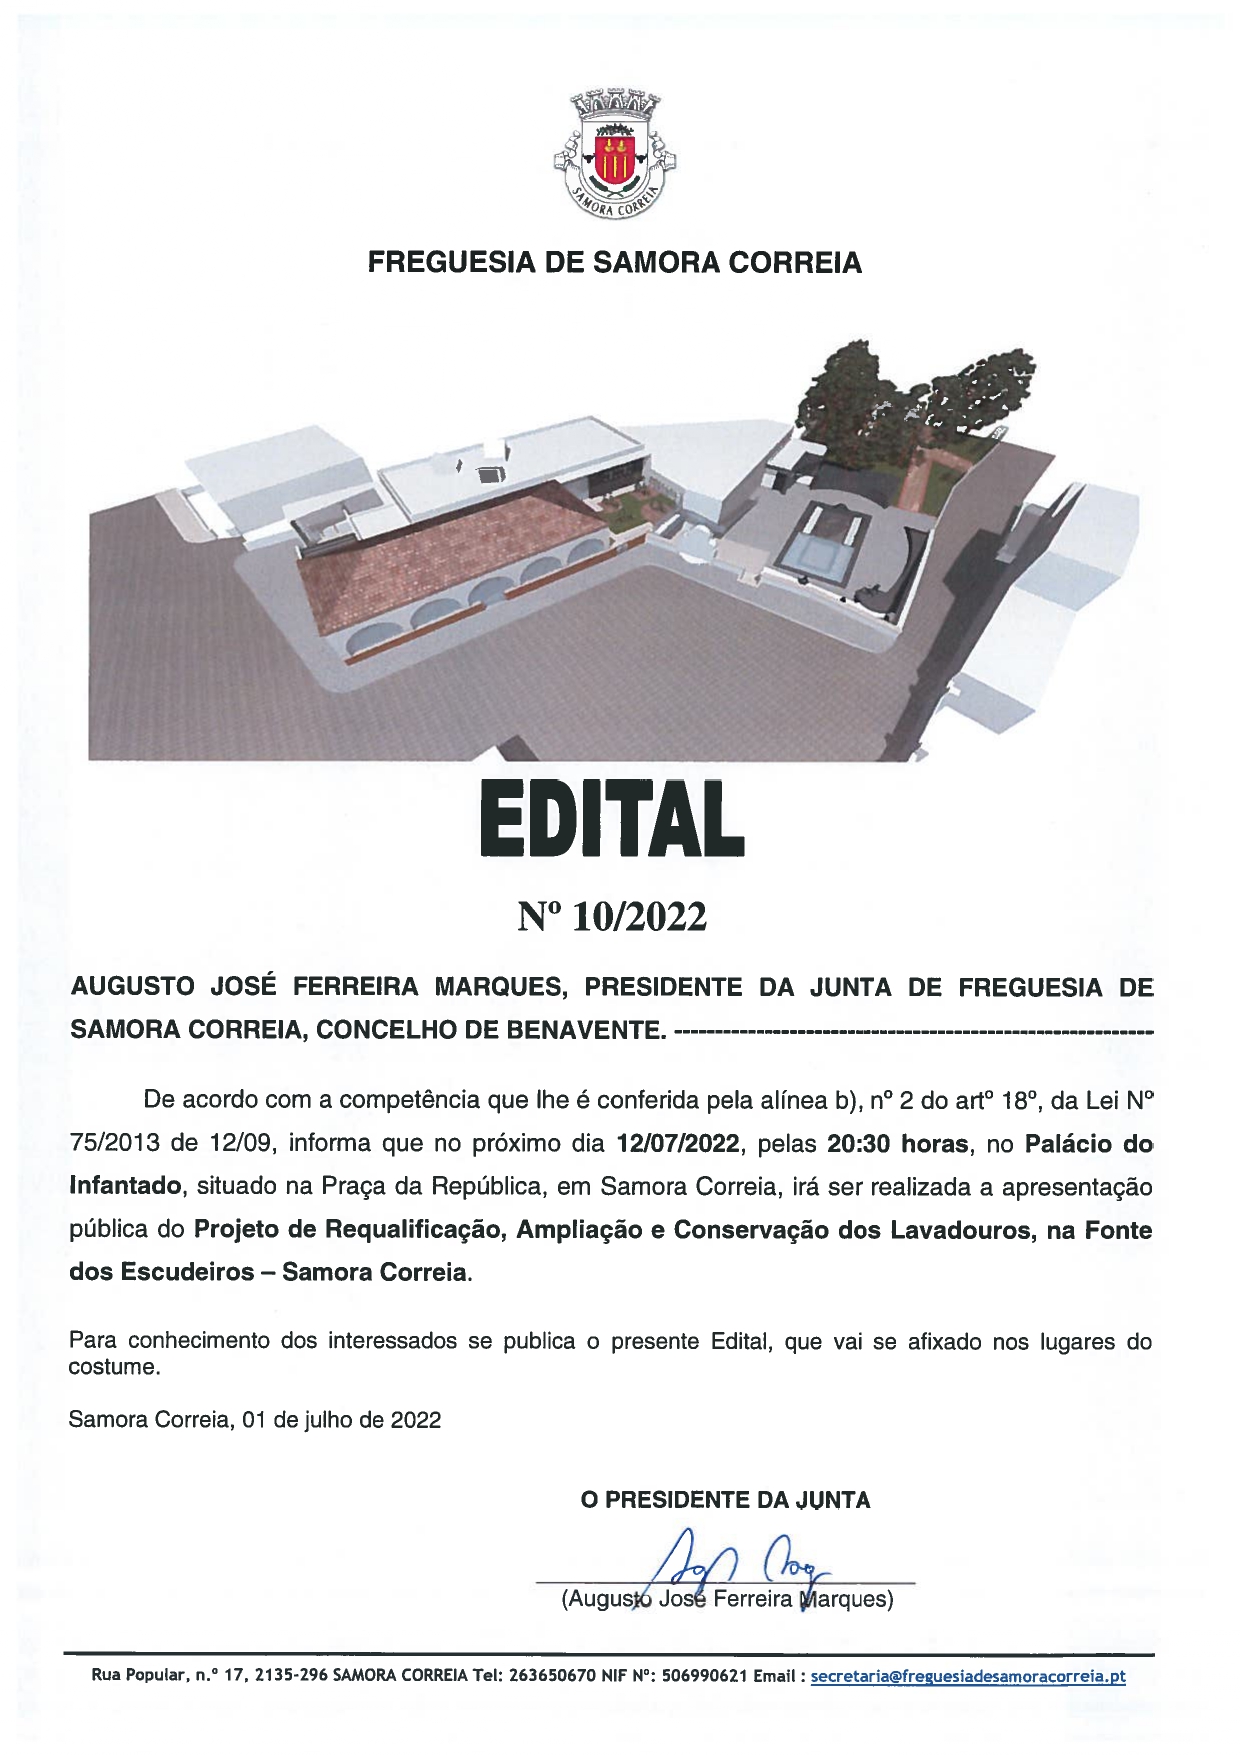 Notícia Edital Nº 10/2022 - Apresentação Pública do Projeto de Requalificação, Ampliação e Conservação dos Lavadouros